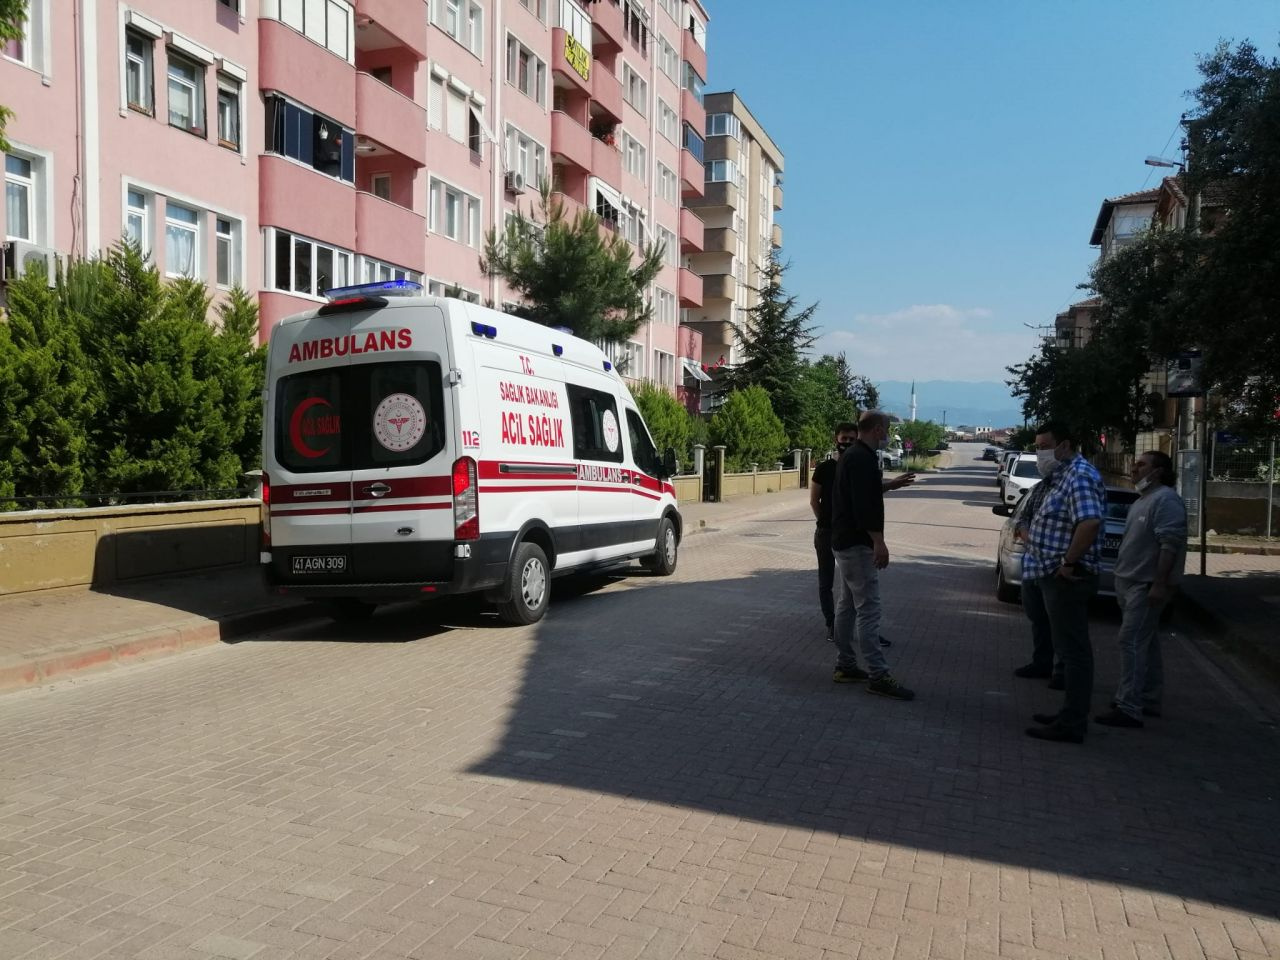 Kocaeli'de ünlü oyuncu Ahmet Yaşar Özveri'nin evine girenler şok oldu! 2 gündür...